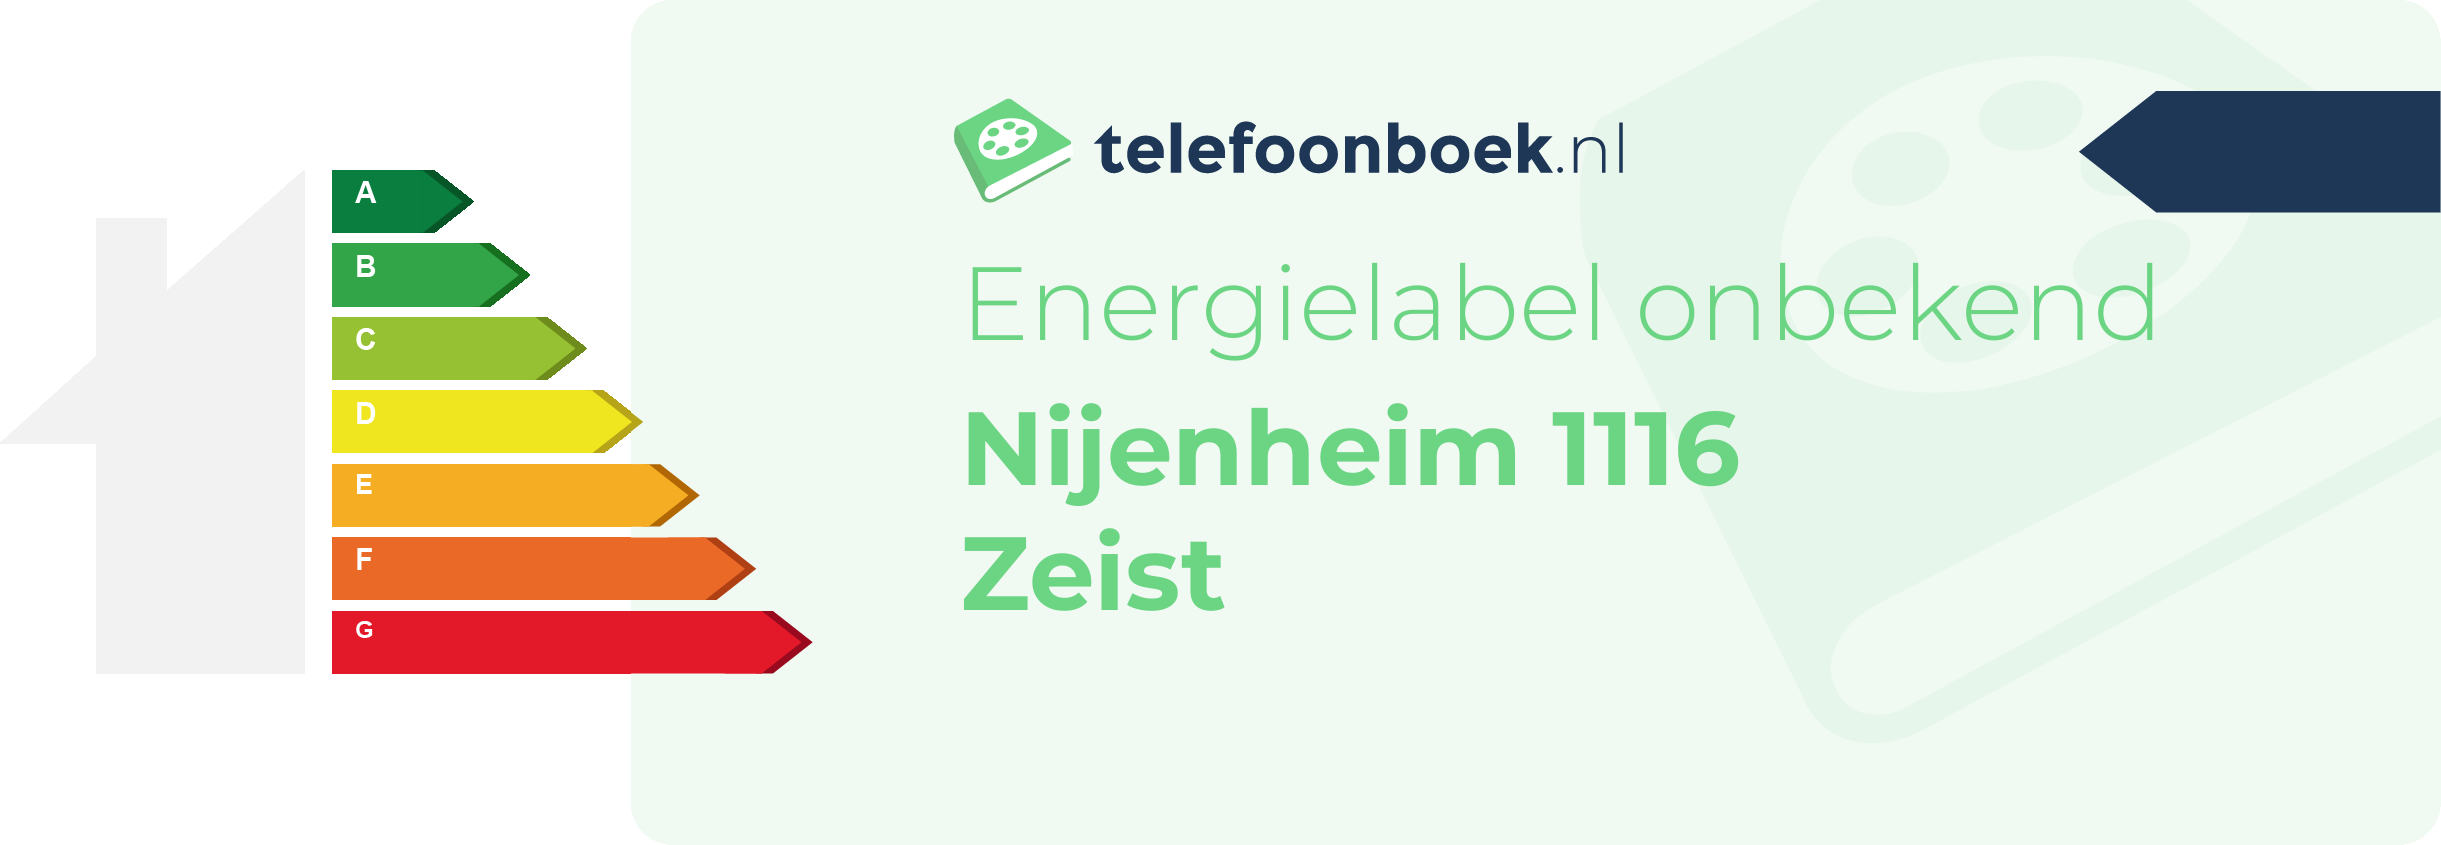 Energielabel Nijenheim 1116 Zeist